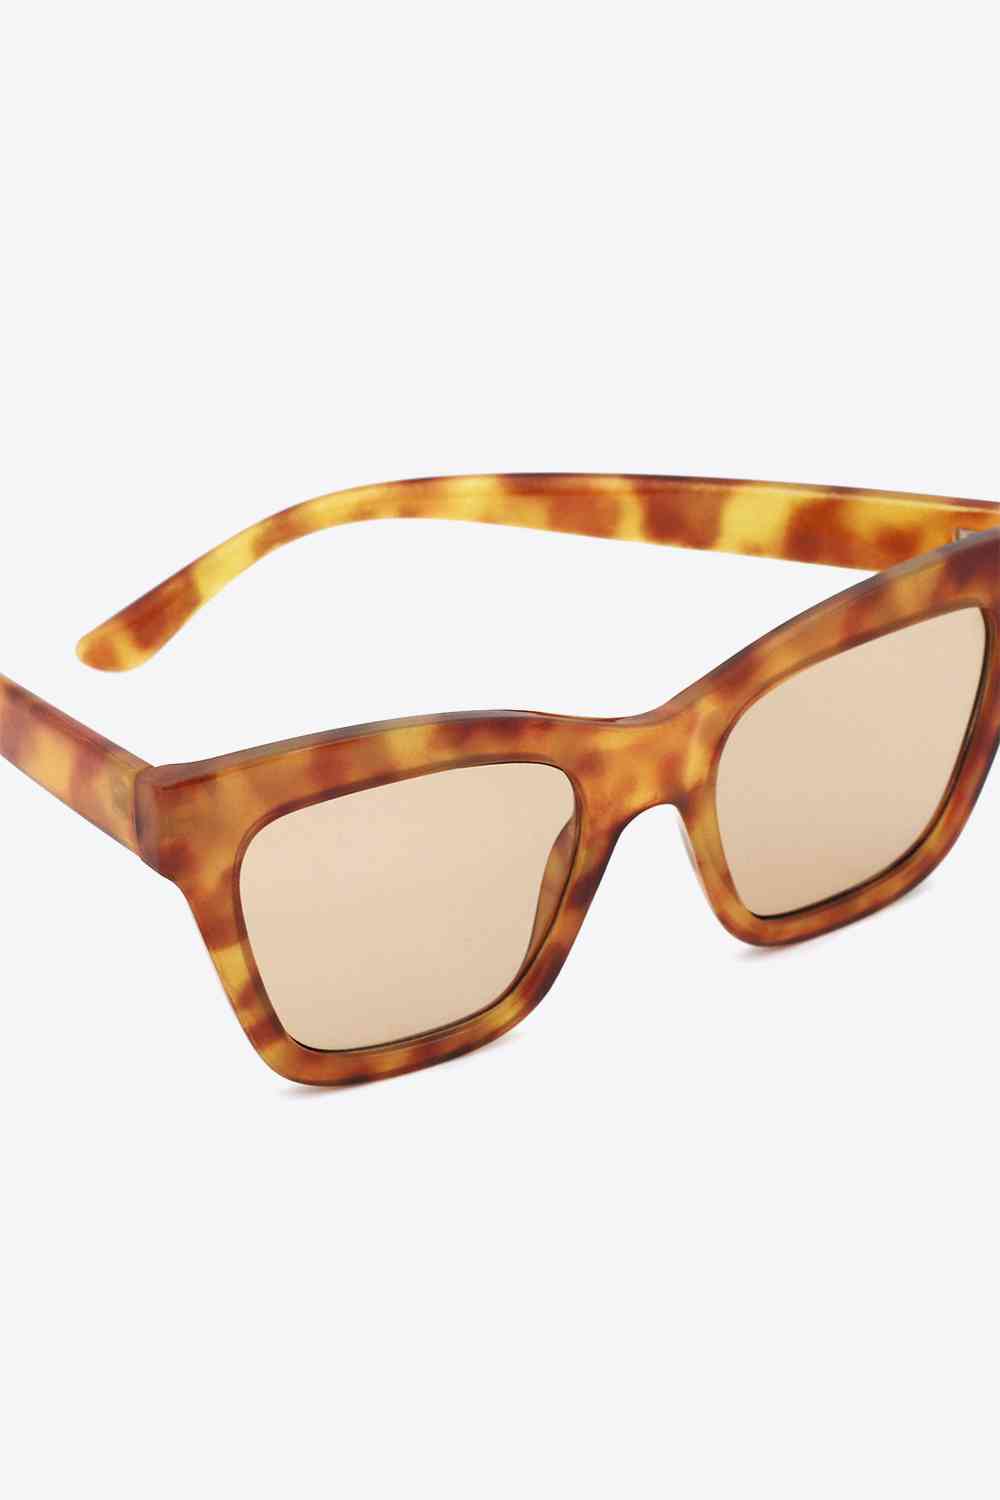 TEEK - Art Clash Sunglasses EYEGLASSES TEEK Trend   